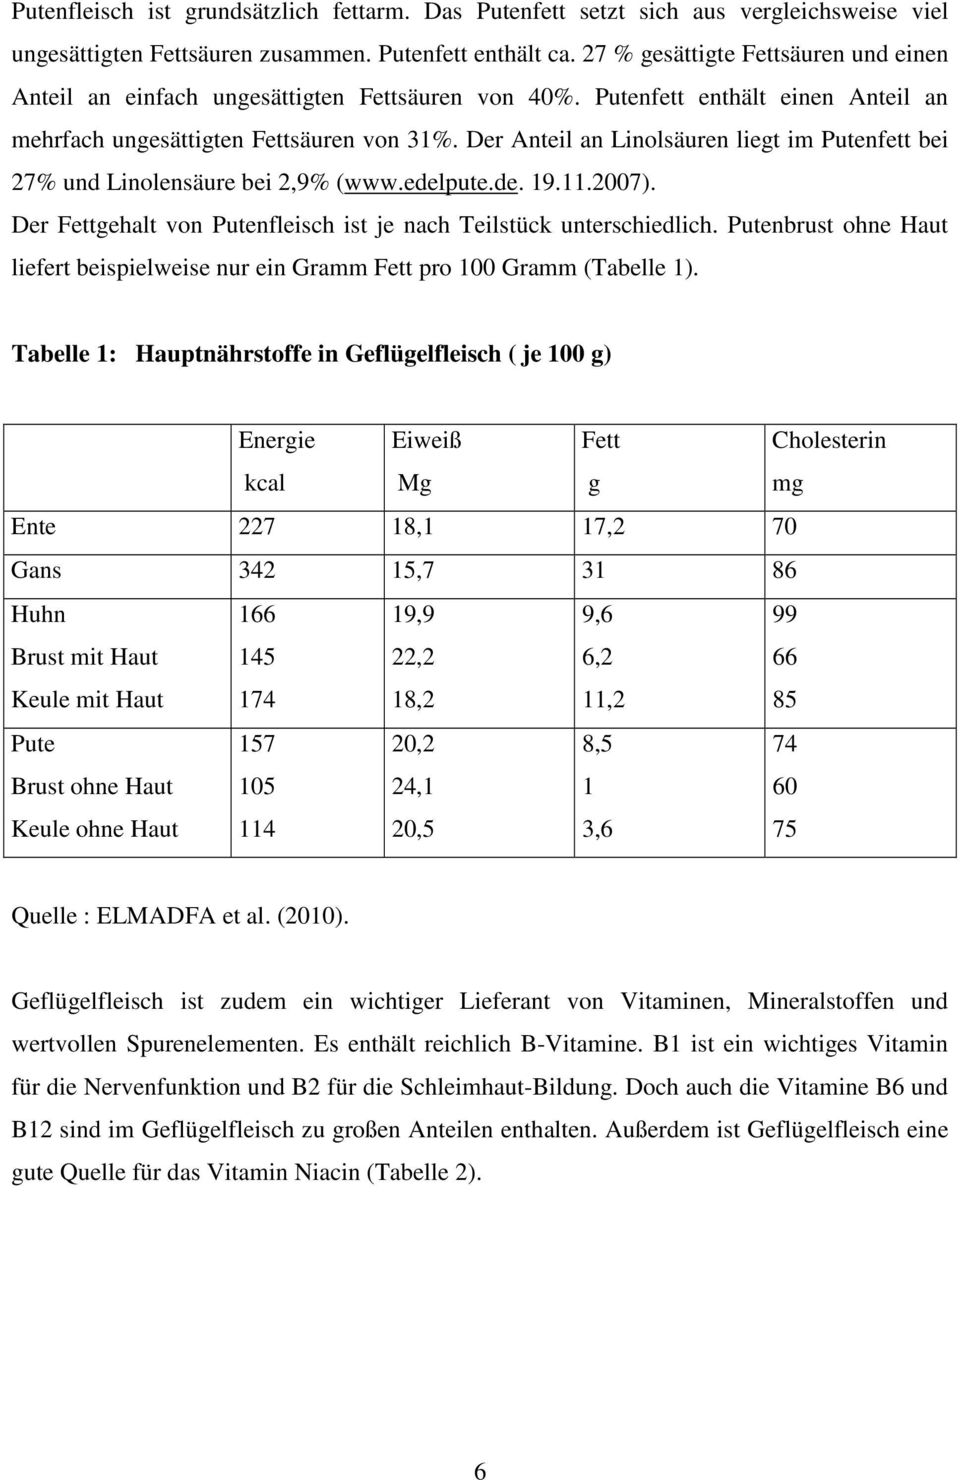 Der Anteil an Linolsäuren liegt im Putenfett bei 27 und Linolensäure bei 2,9 (www.edelpute.de. 19.11.2007). Der Fettgehalt von Putenfleisch ist je nach Teilstück unterschiedlich.